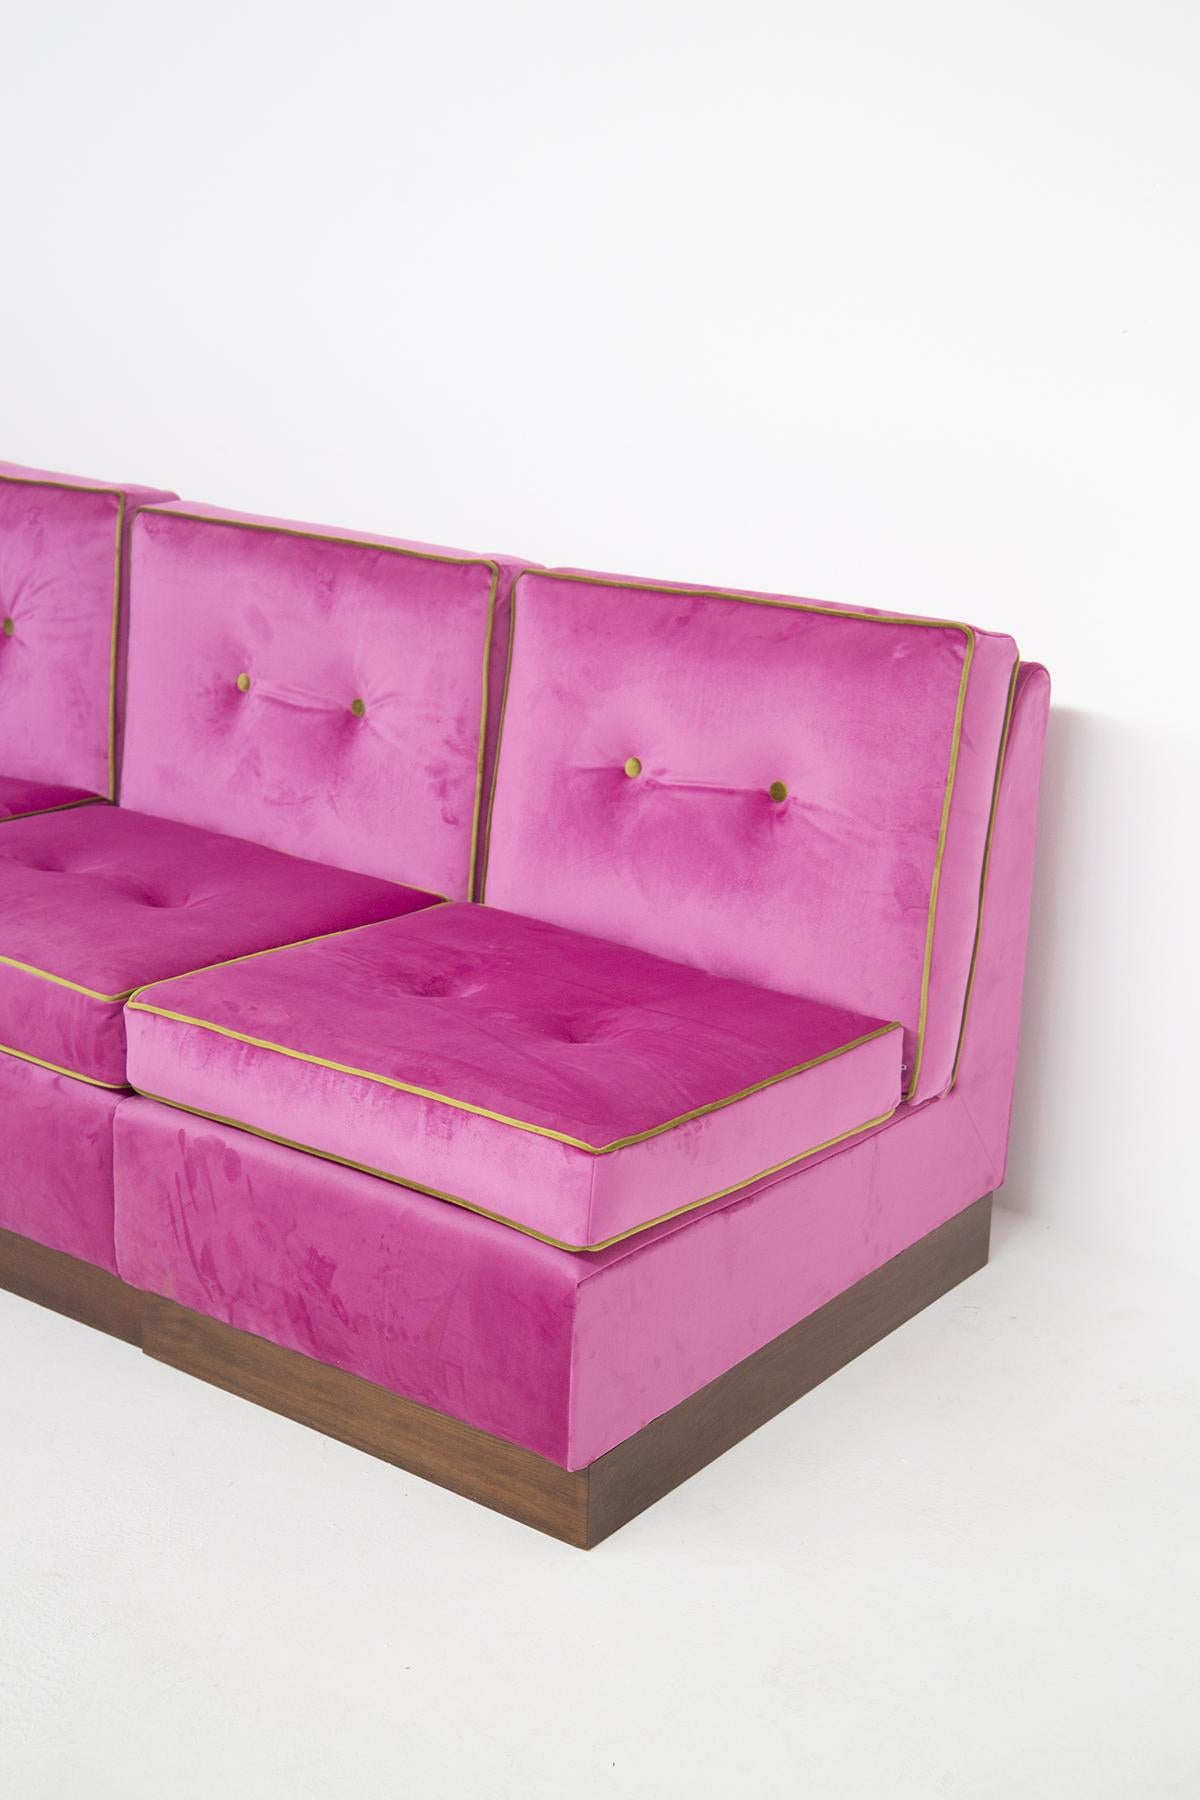 Mid-Century Modern Modular Italian Sofà in Pink and Green Velvet, Restored